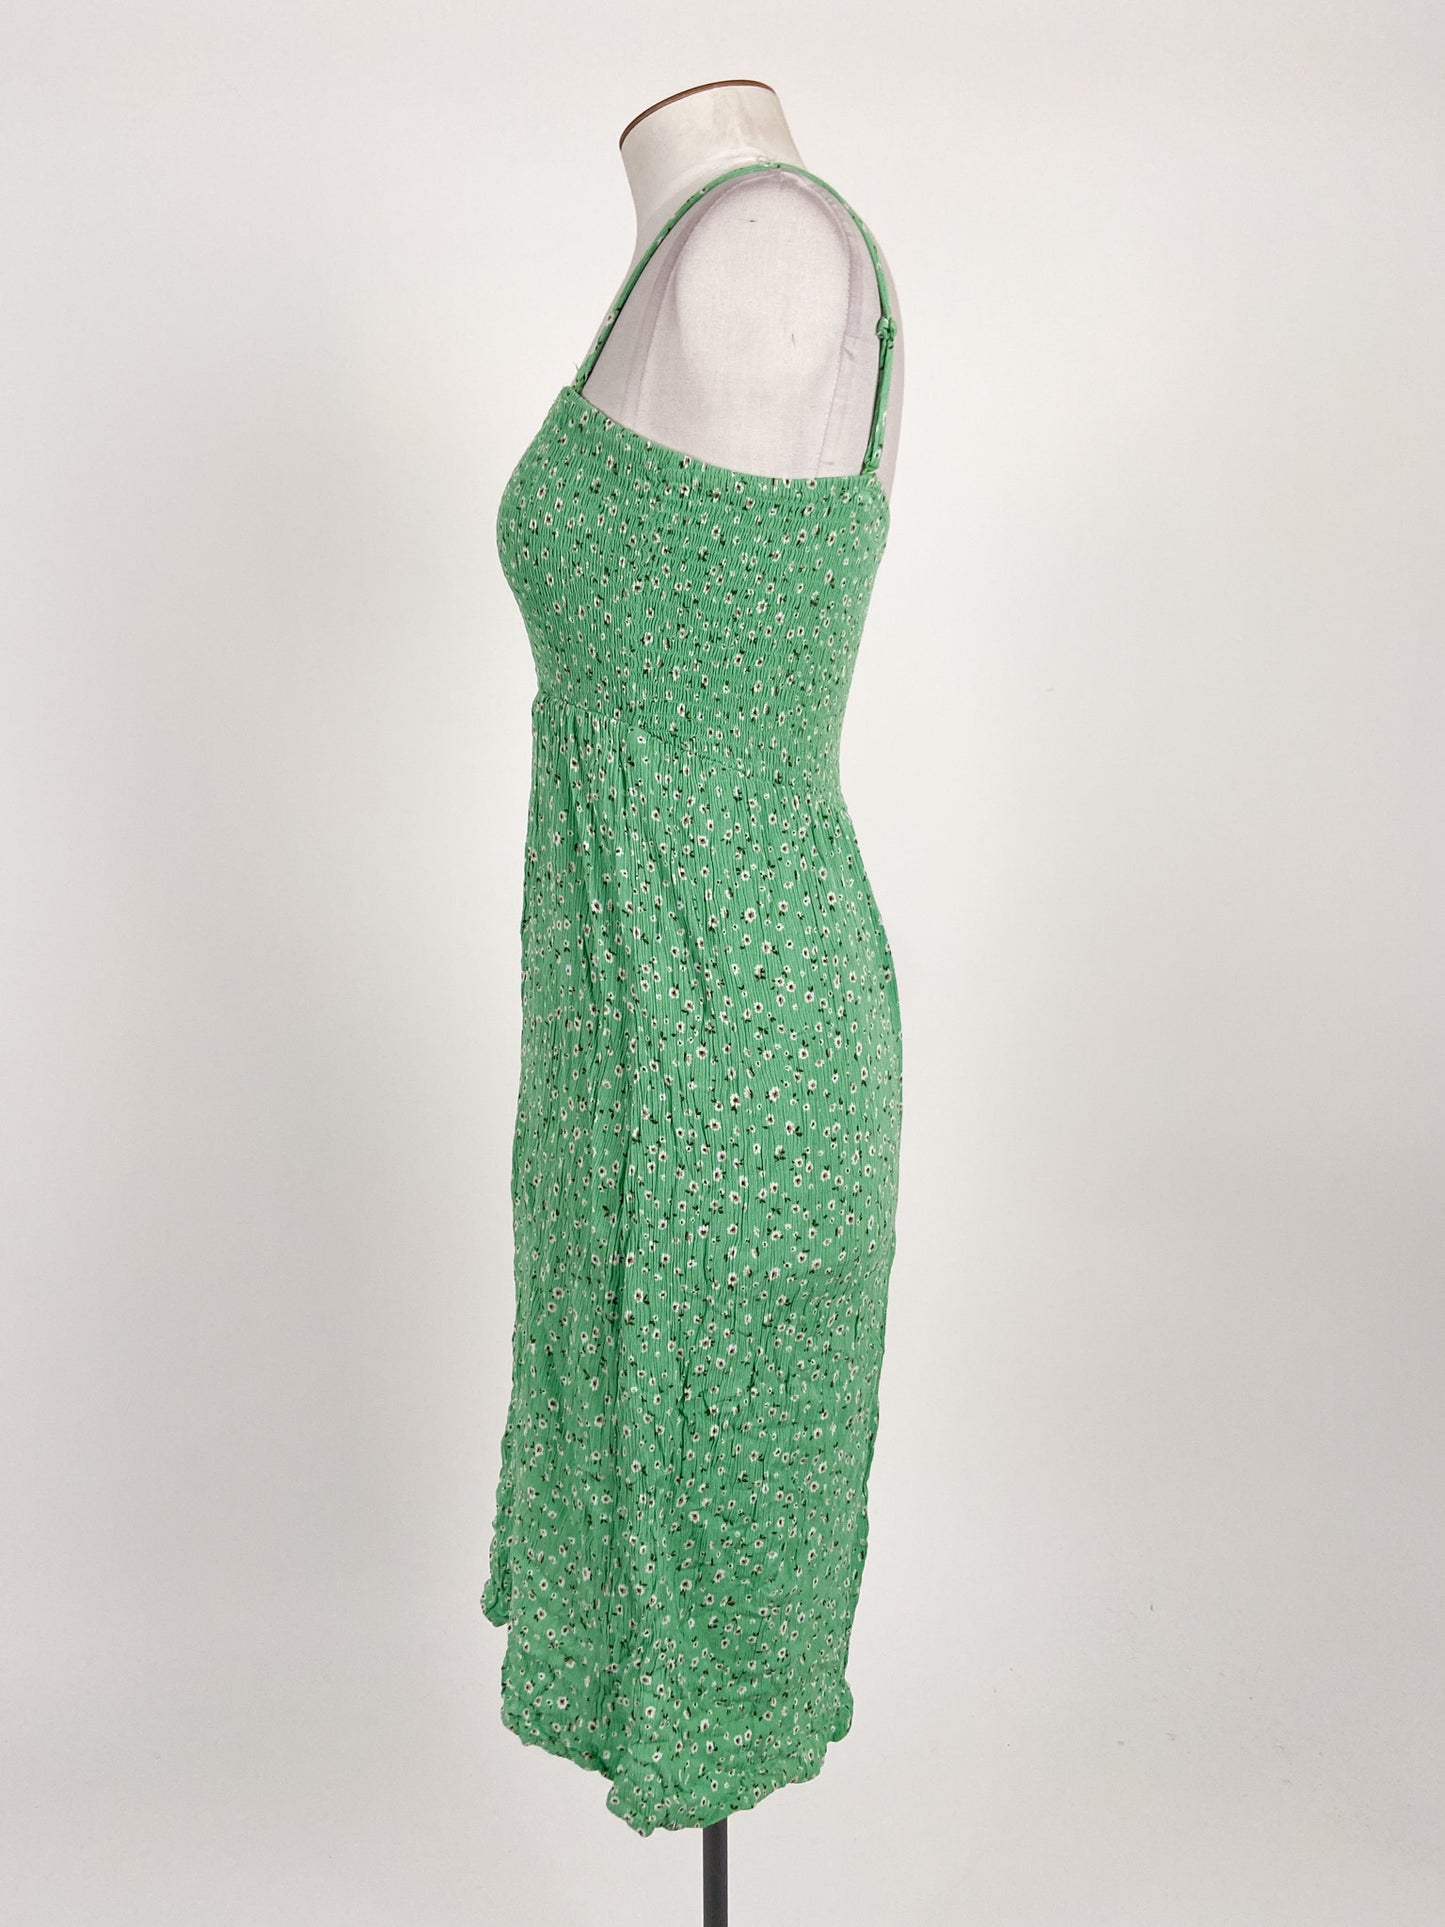 Spirit | Green Casual Dress | Size 12